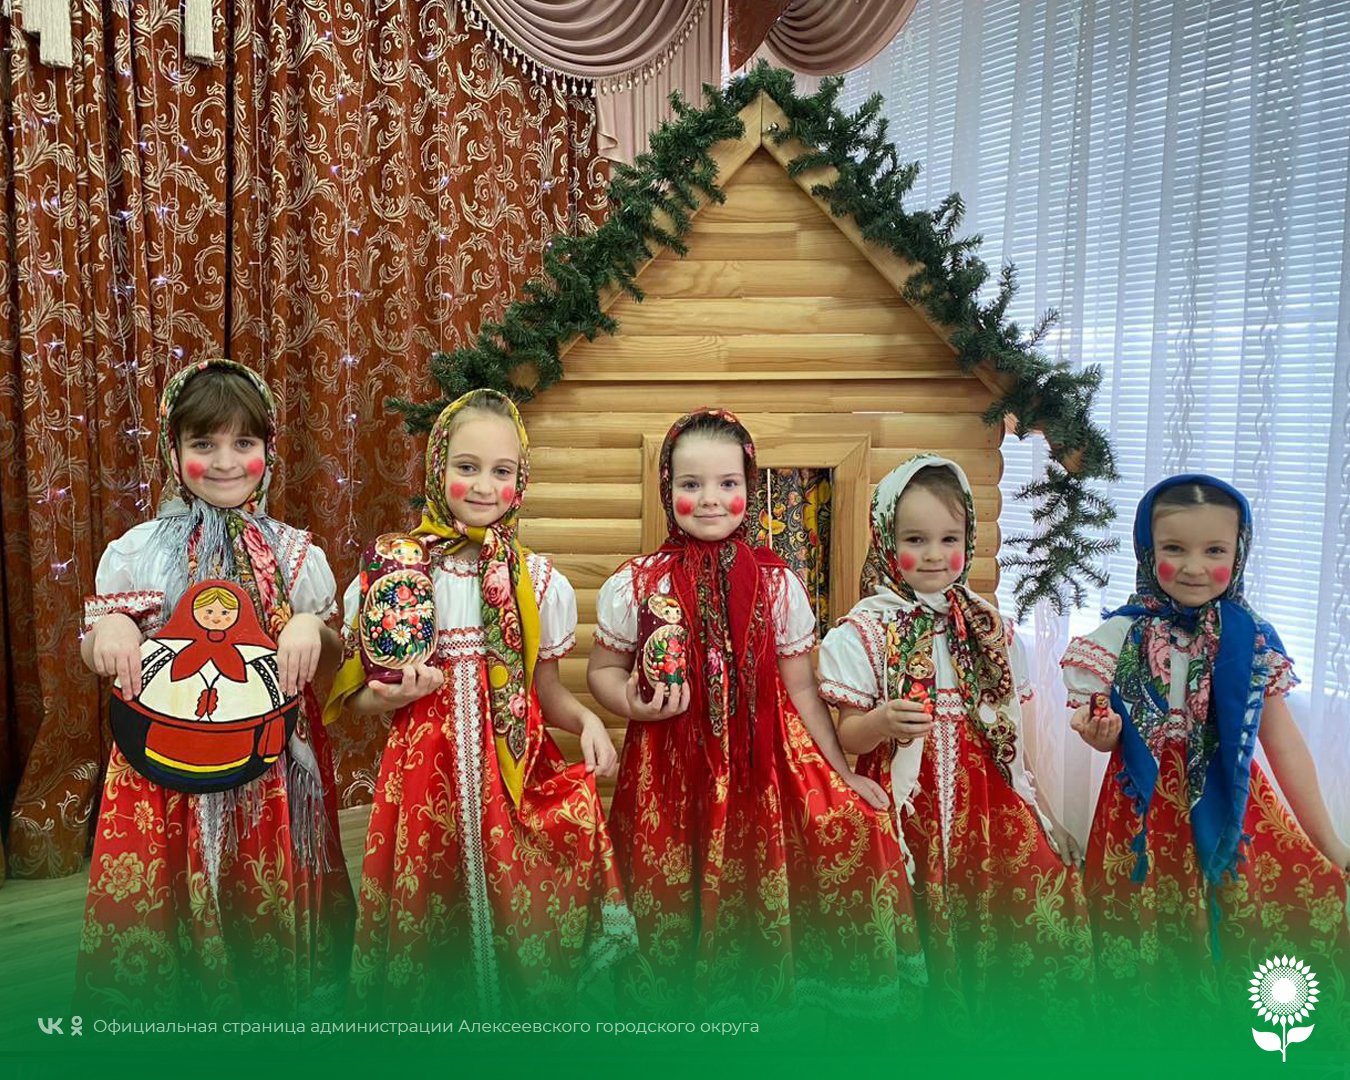 В детских садах Алексеевского городского округа отметили День Рождения деревянной куклы Матрёшки